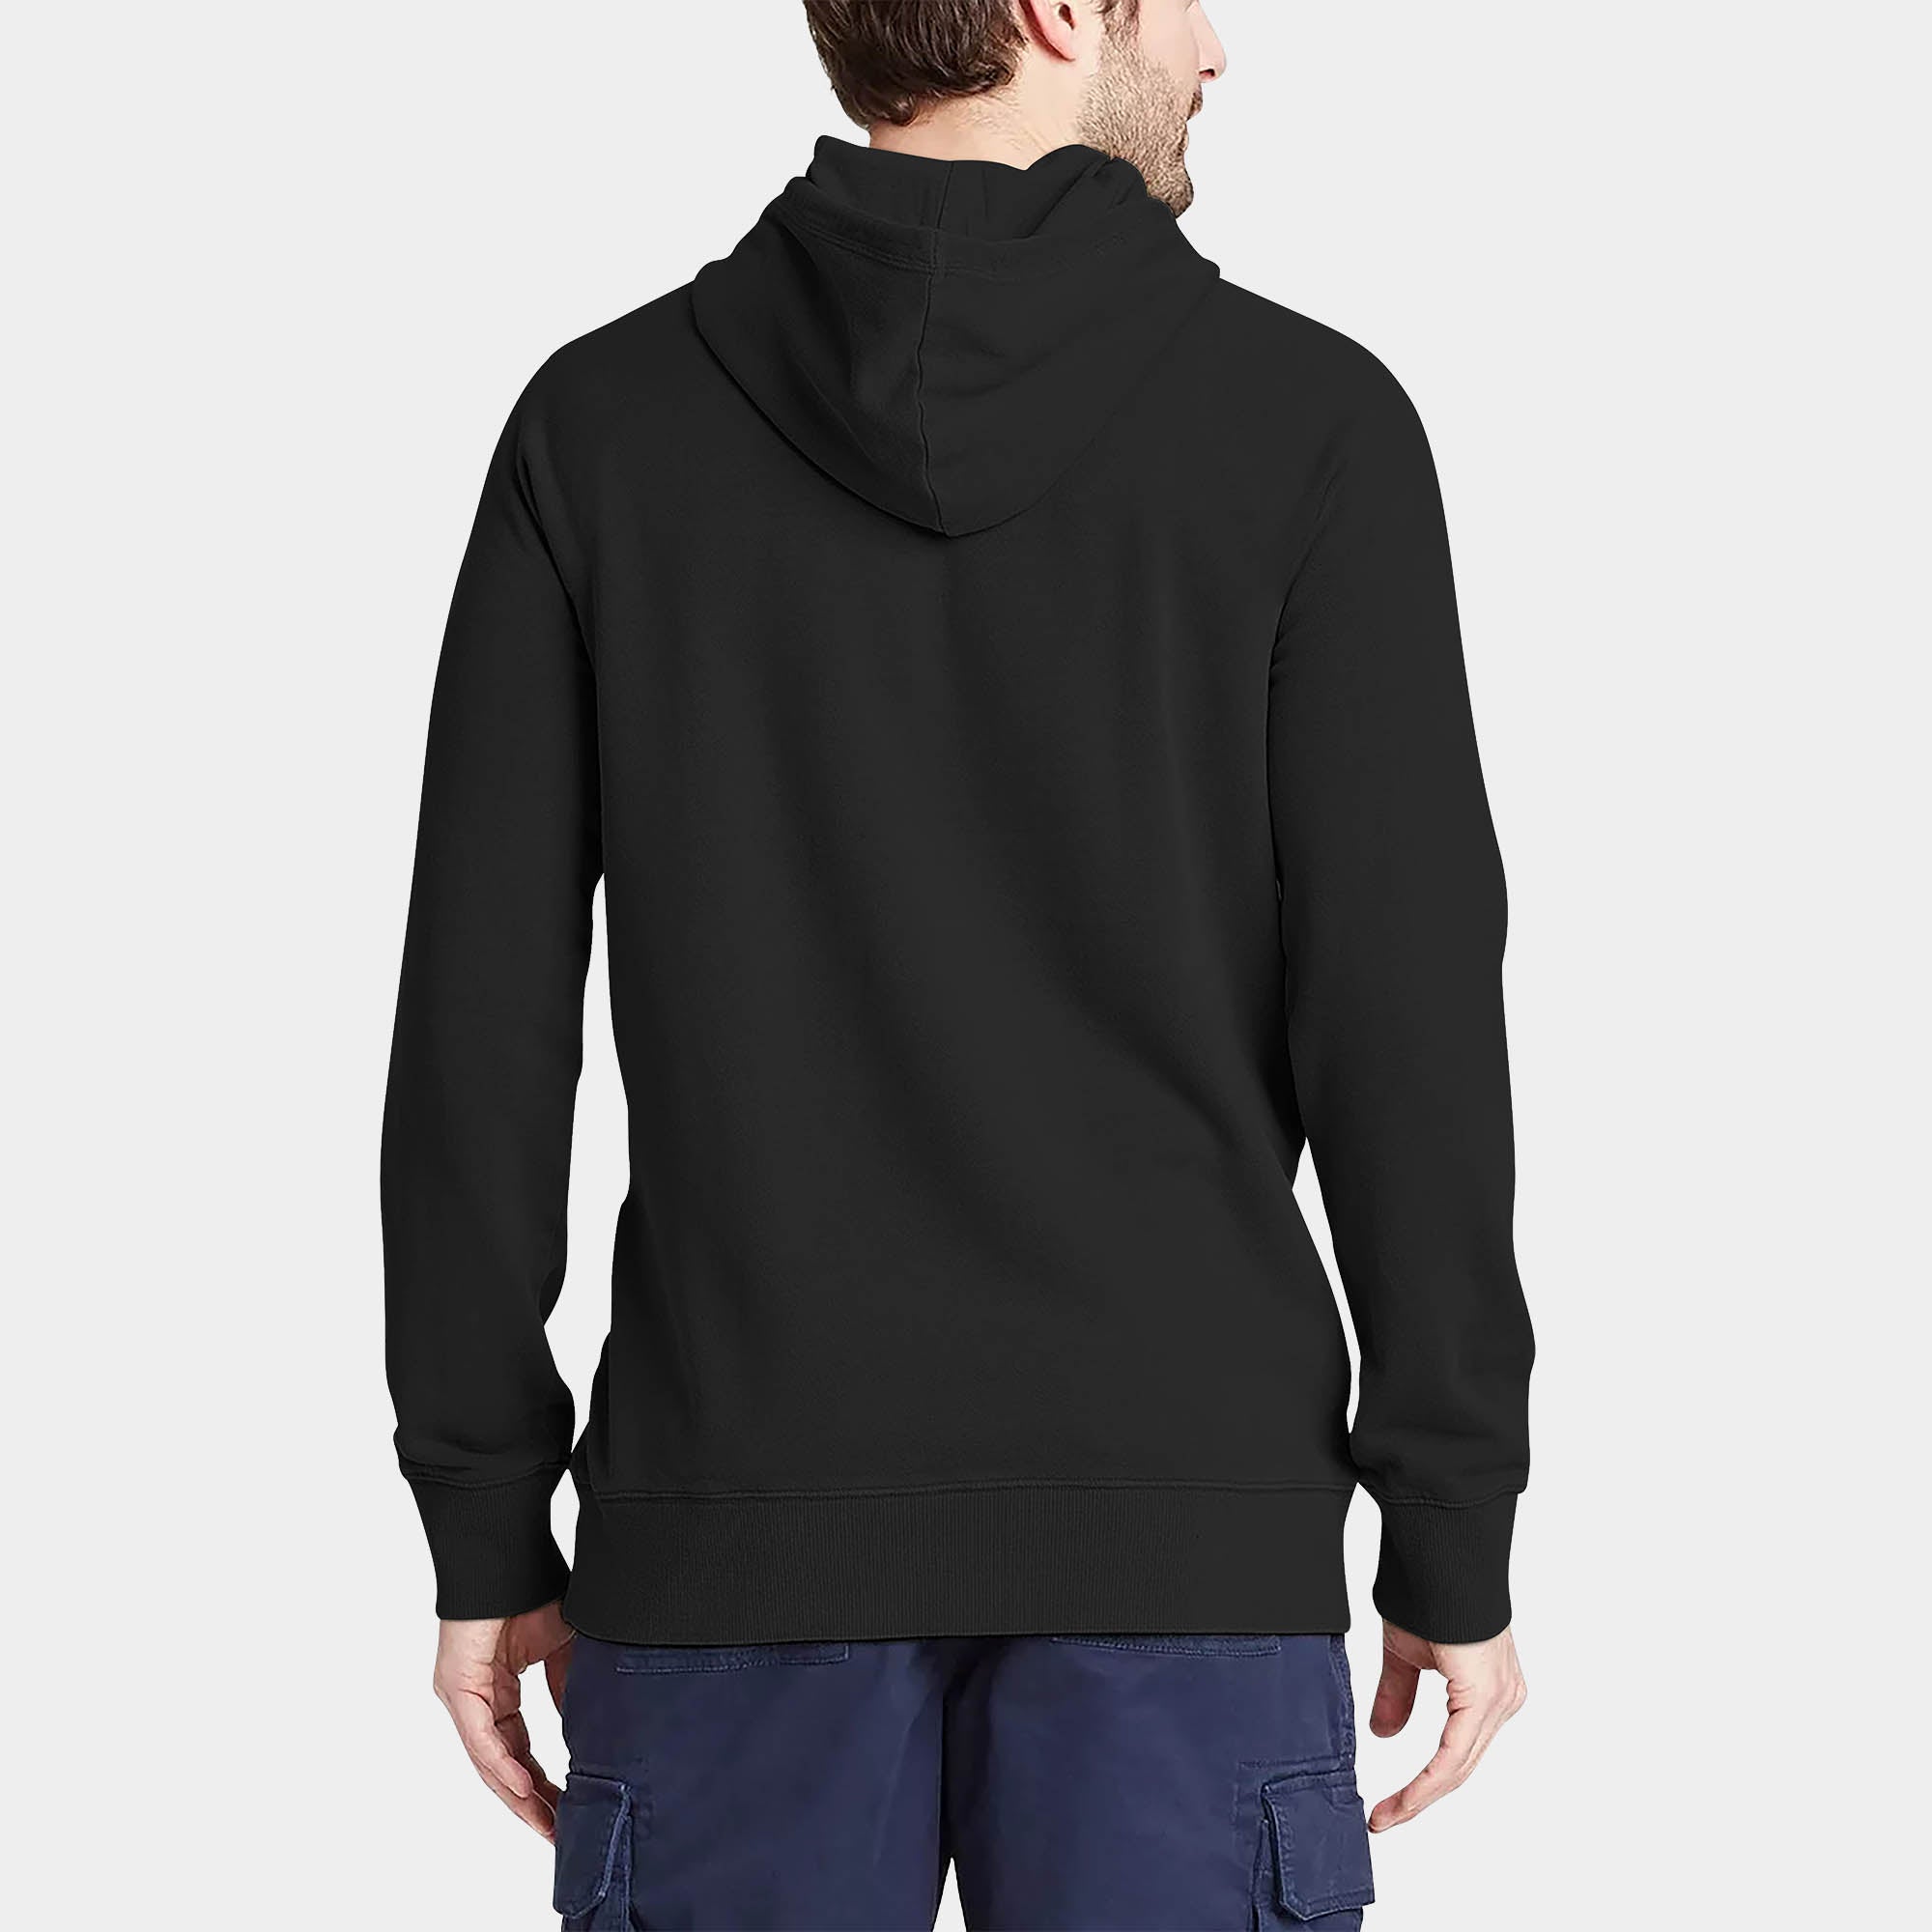 hoodie_hoodies for men_hooded sweatshirt_custom hoodies_cheap hoodies_couple hoodies_pullover hoodie_mens pullover hoodie_Black